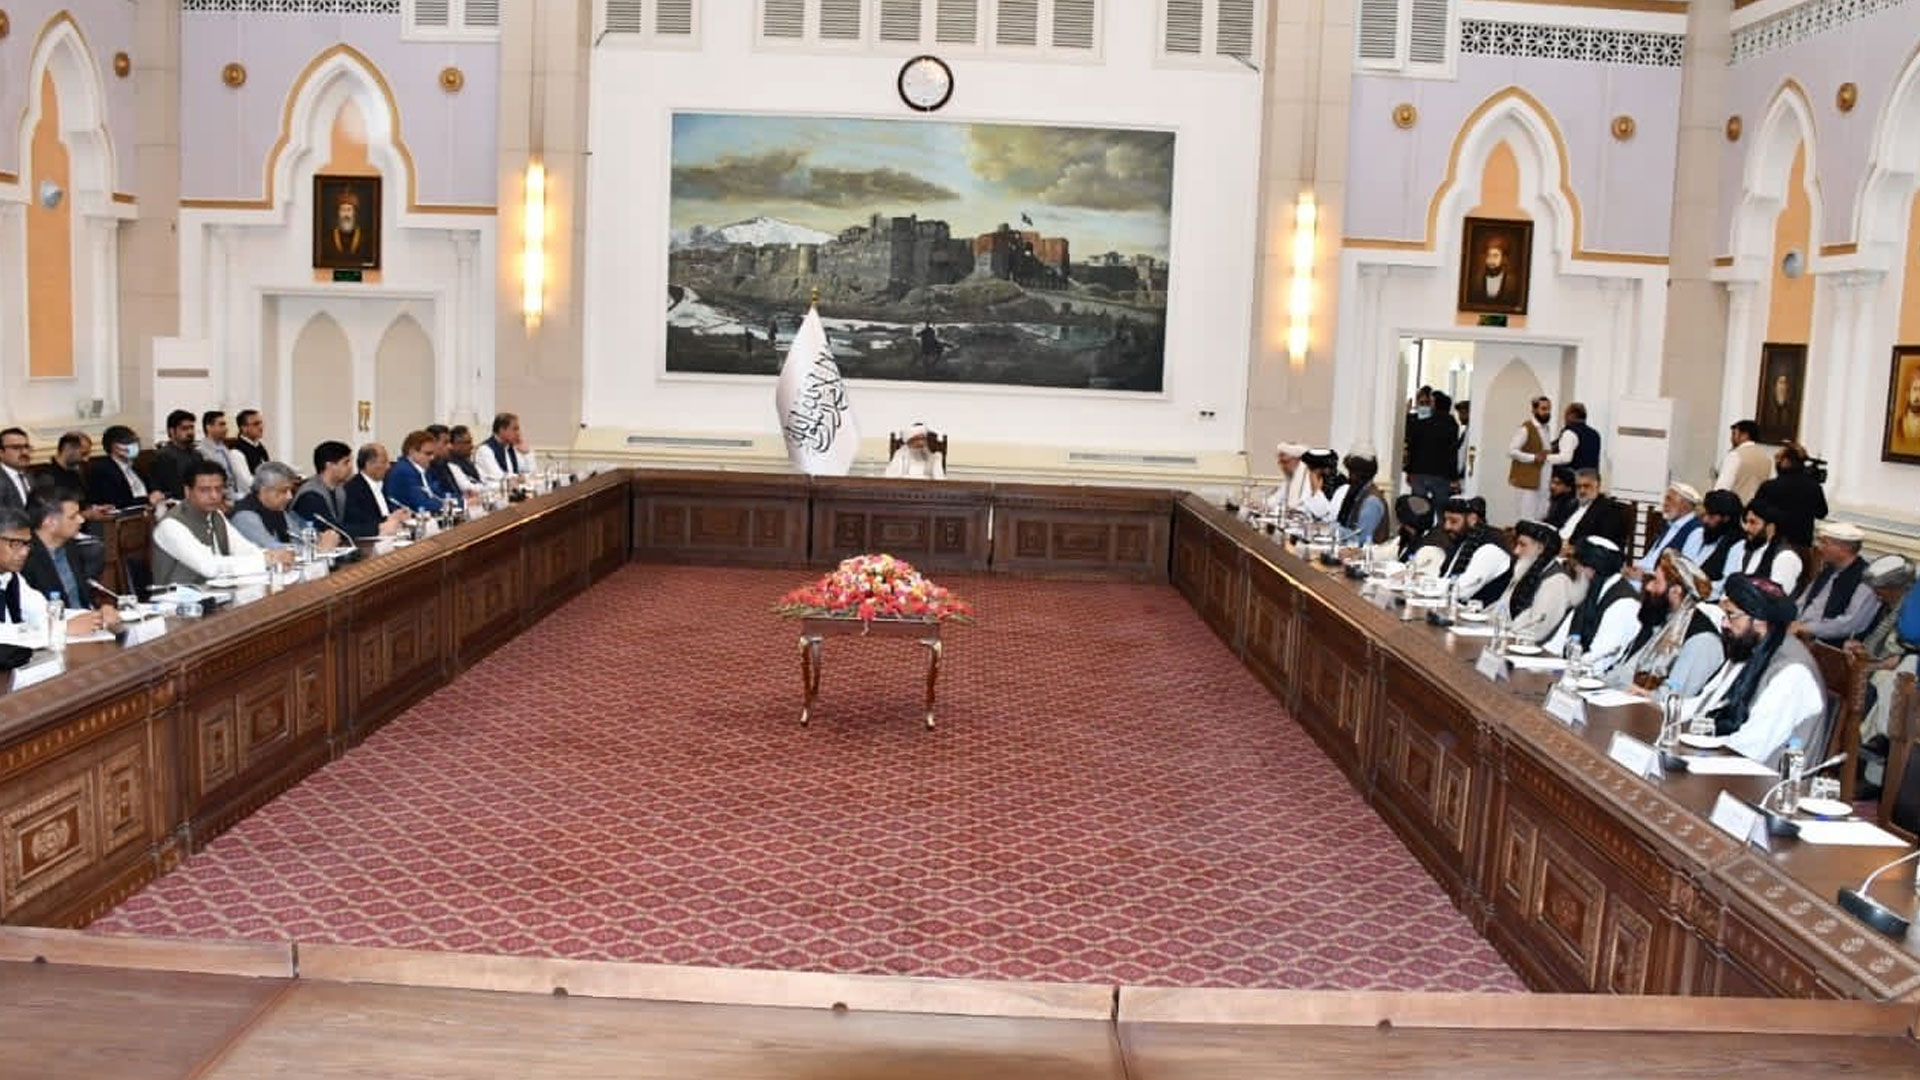 افغان وزیراعظم ملا حسن اخوند نے انسانی امداد کی بروقت فراہمی پر پاکستانی قیادت کا شکریہ ادا کیا— فوٹو: طلوع نیوز